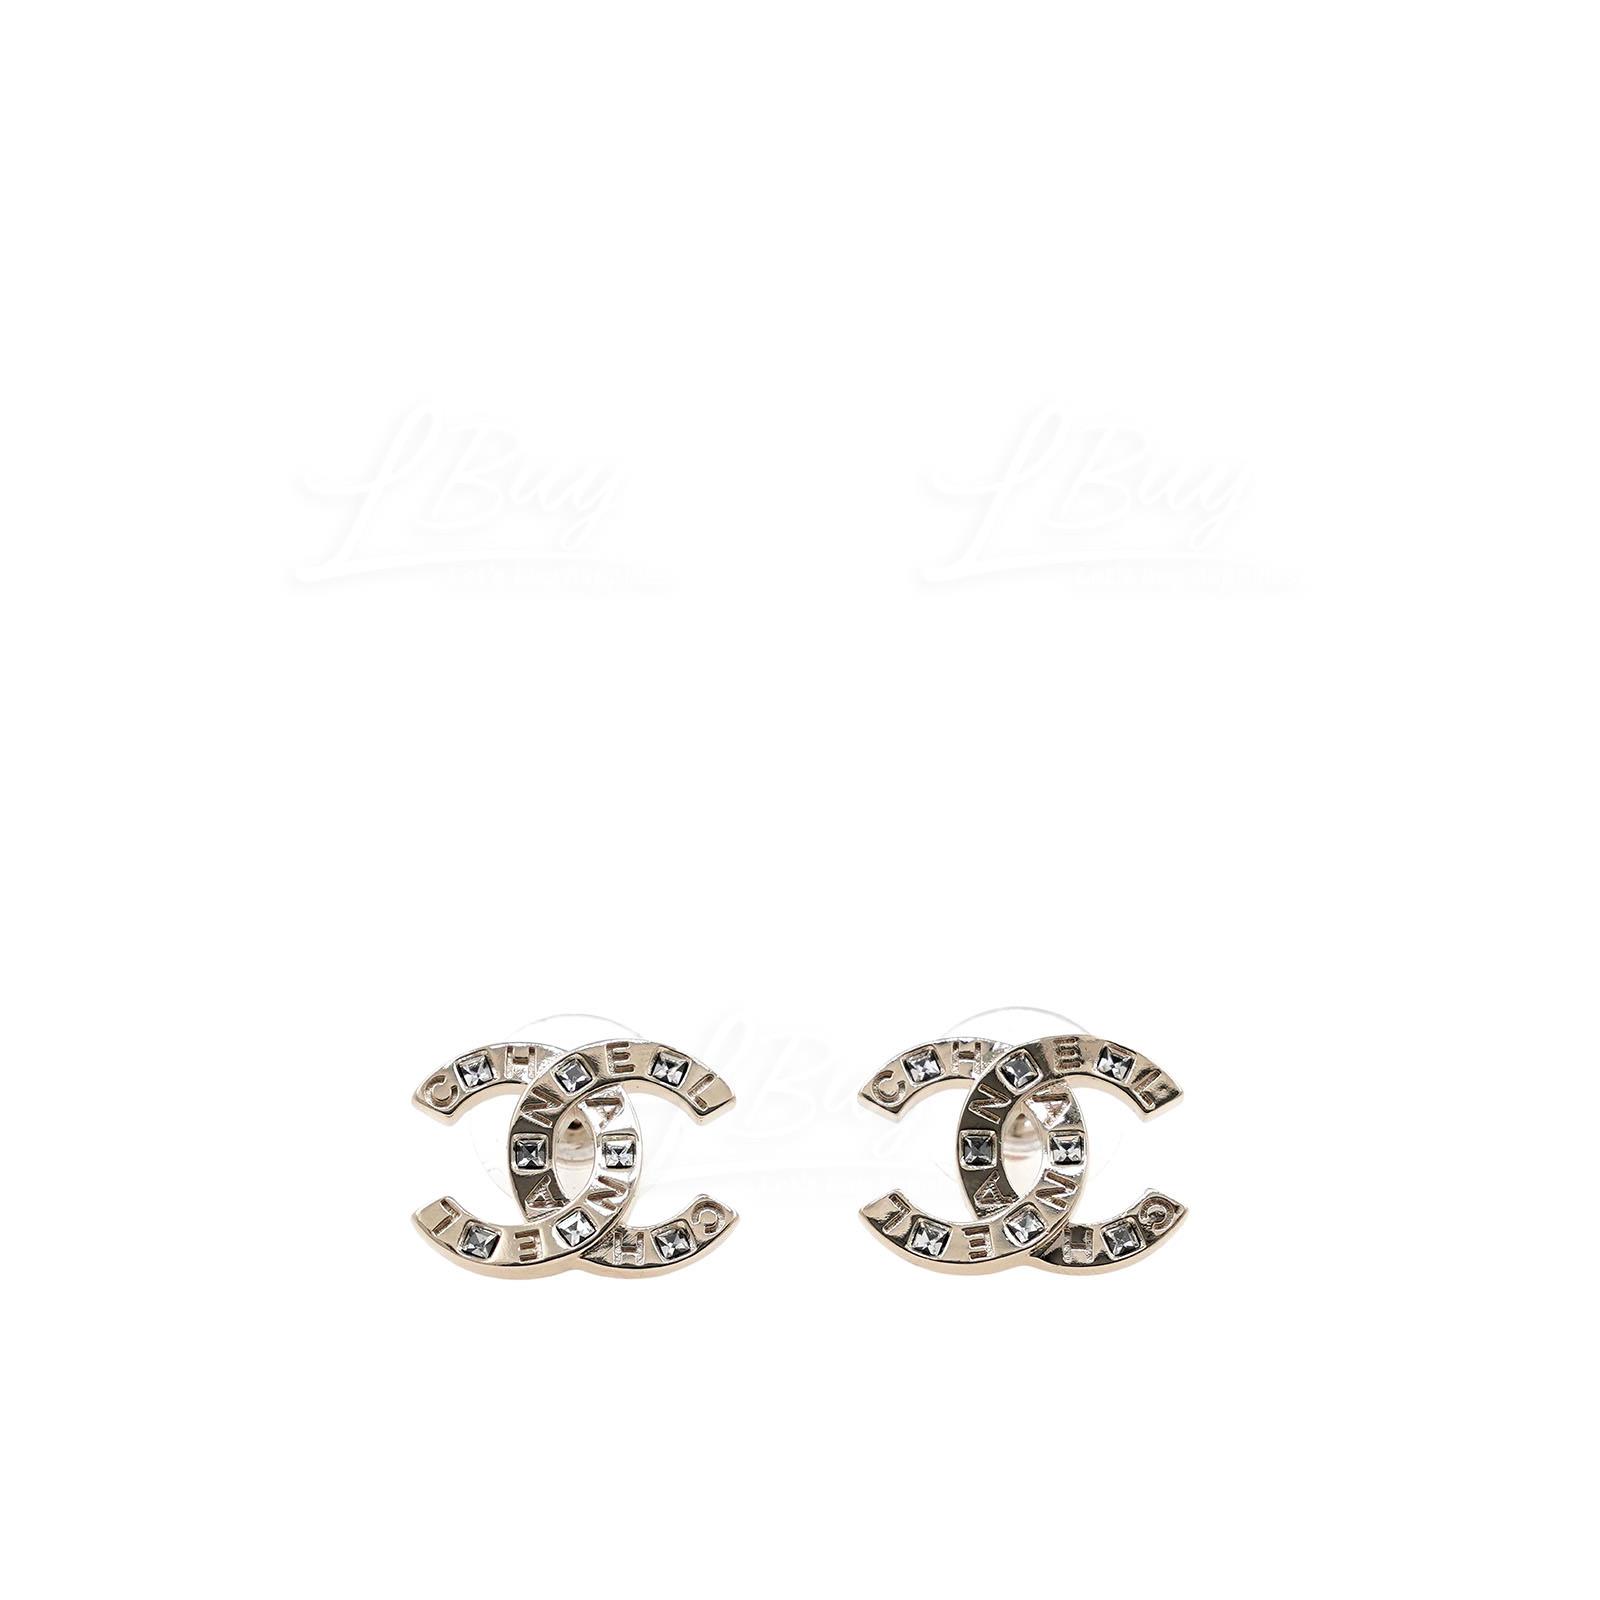 Chanel logo earrings AP6054